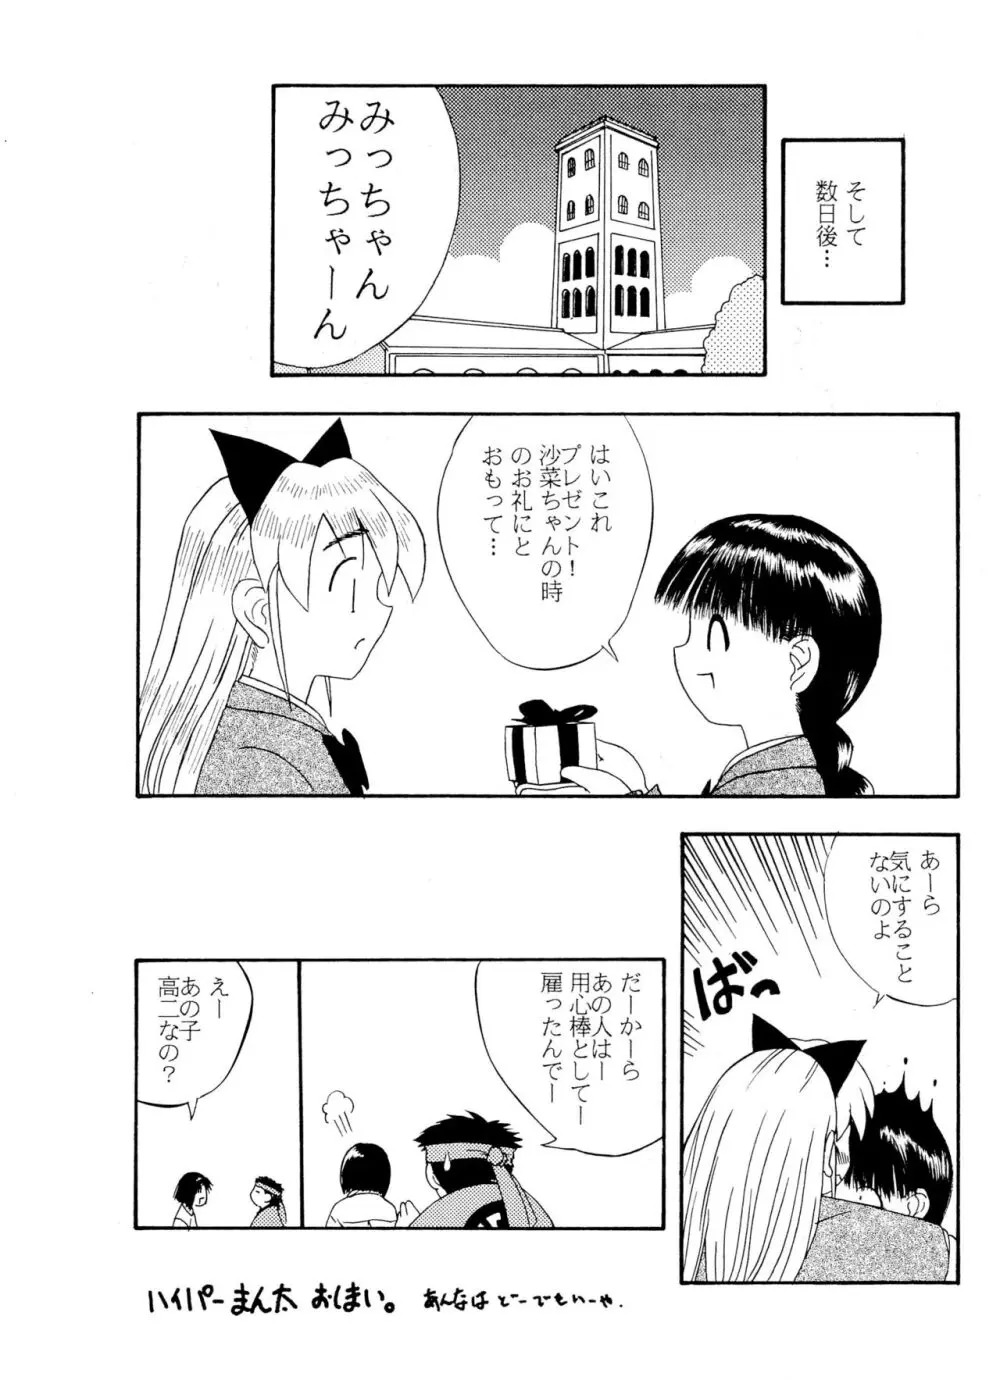 ANNA あ・ん・な・・・ - page15